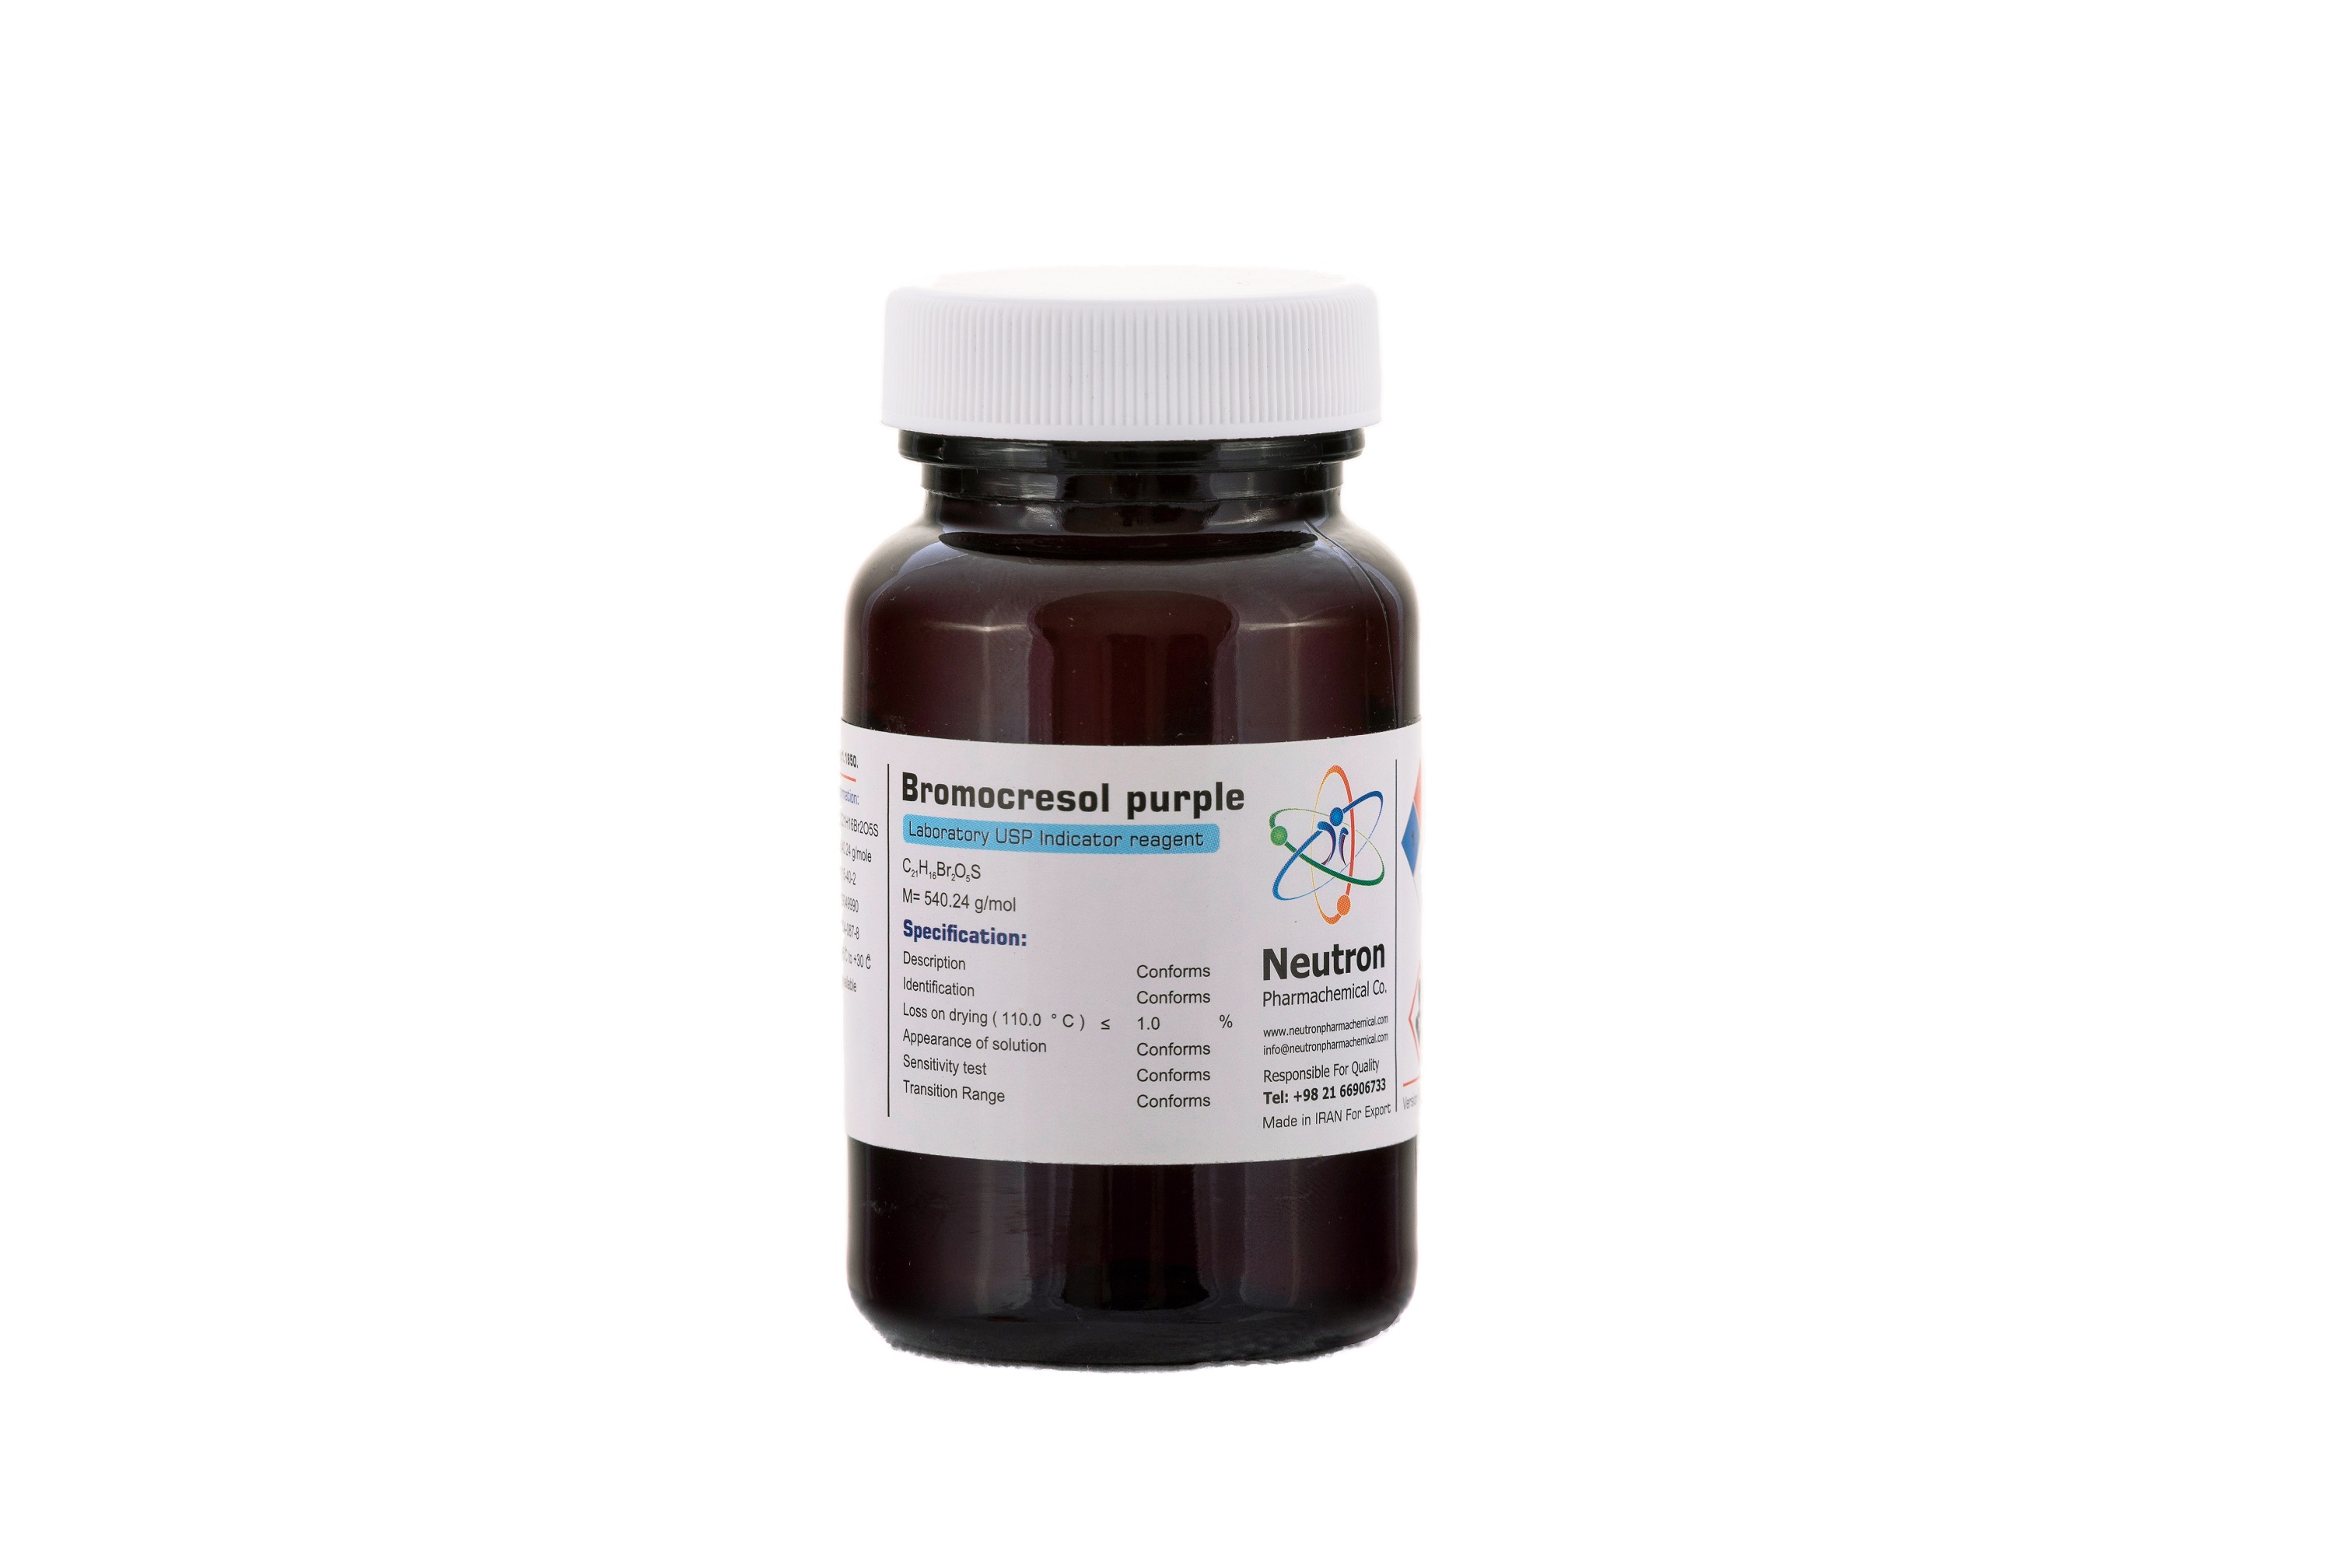 بروموکروزول گرین و بروموکروزول پرپل (کدN)